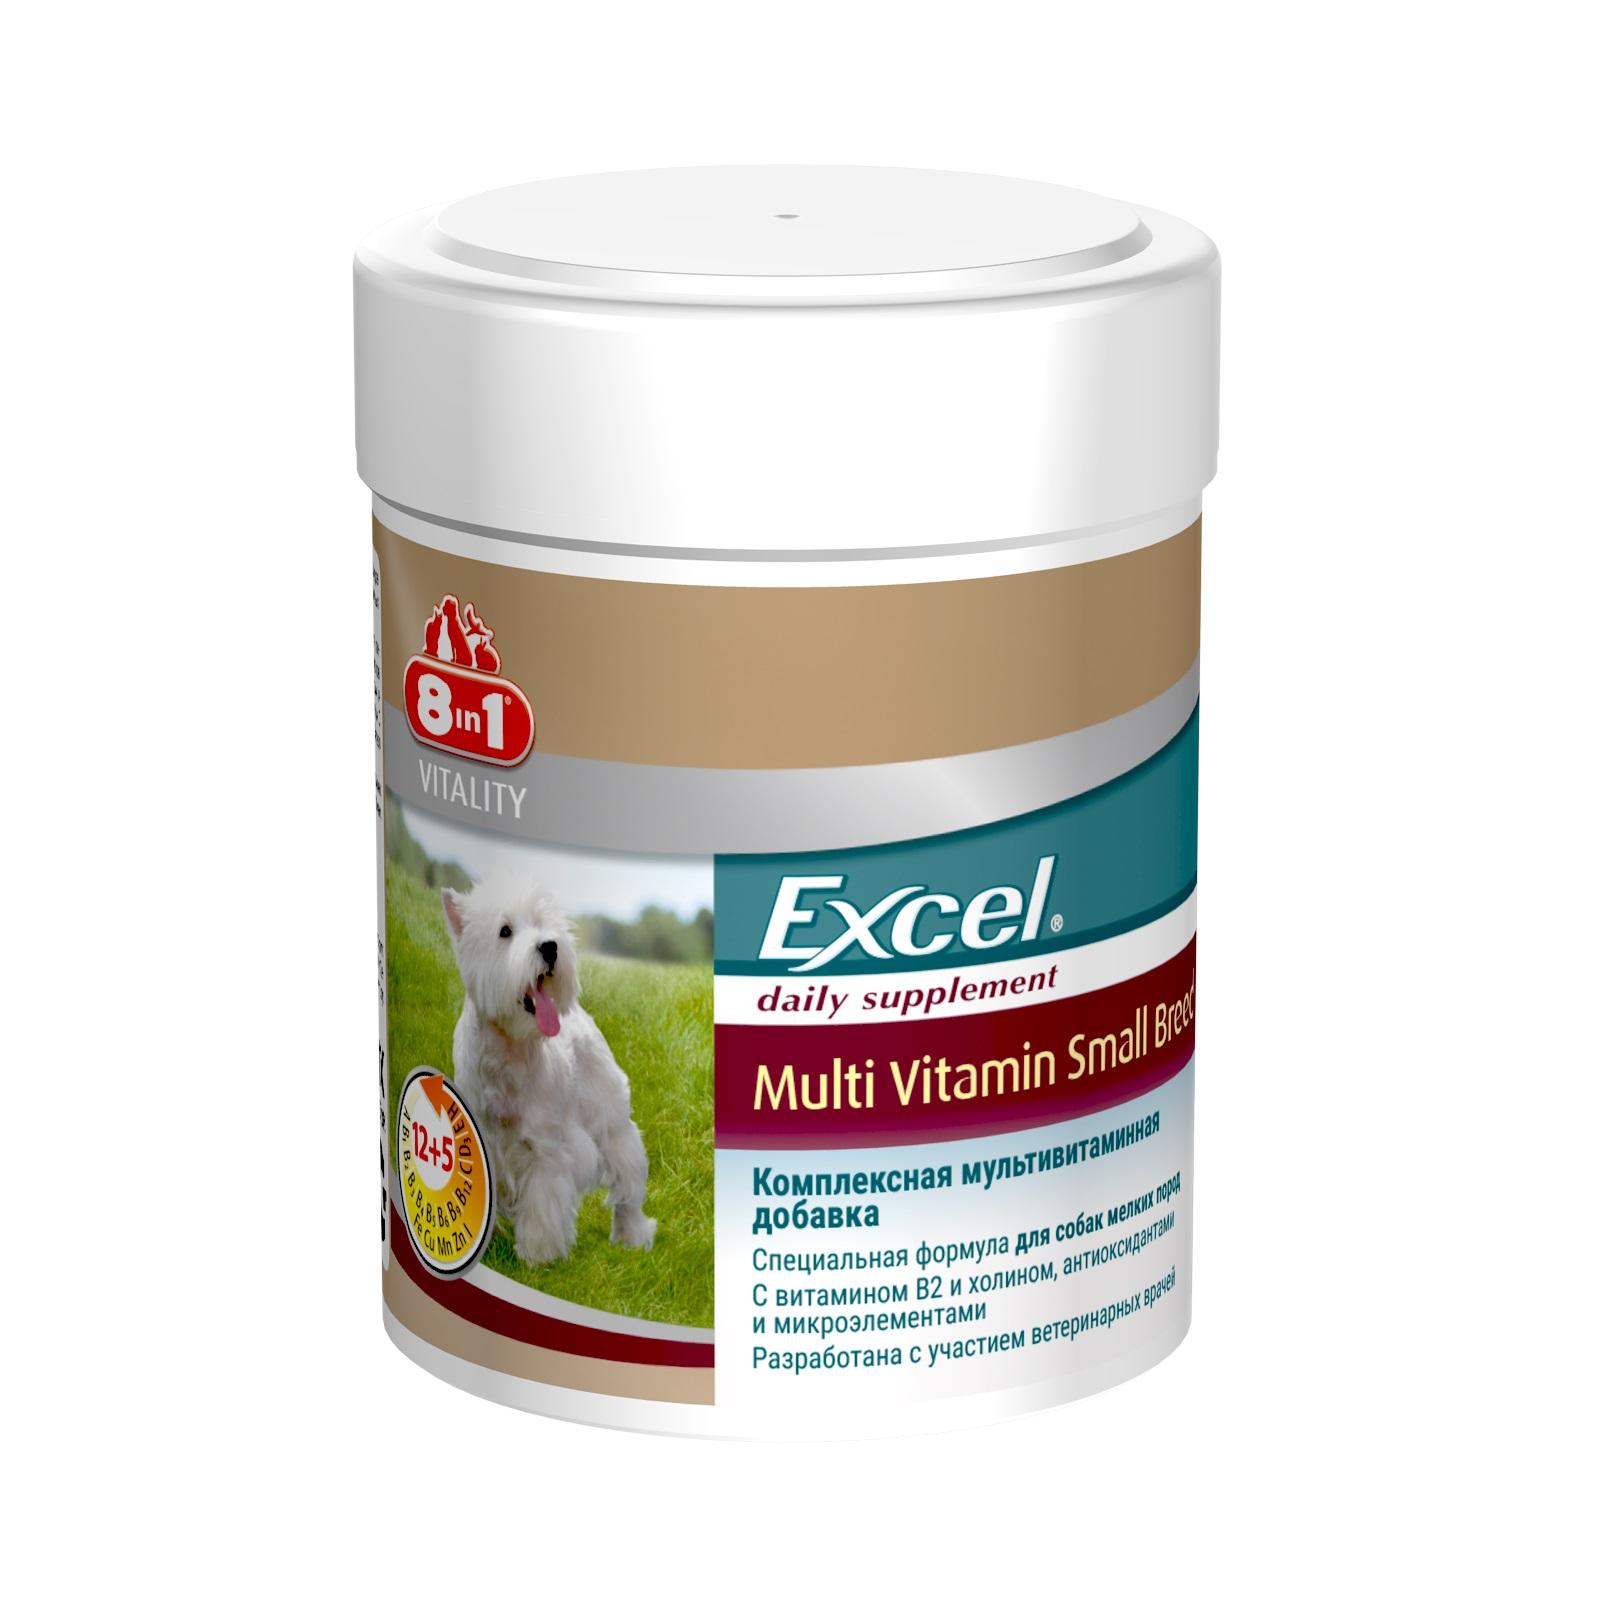 8в1 витамины для собак. Витамины для щенков мелких пород 8 в 1 excel. Витамины для собак excel small Breed 8in1. Витамины для собак 8 в 1 excel для мелких пород. Витамины 8 в 1 excel Multi Vitamin small Breed.